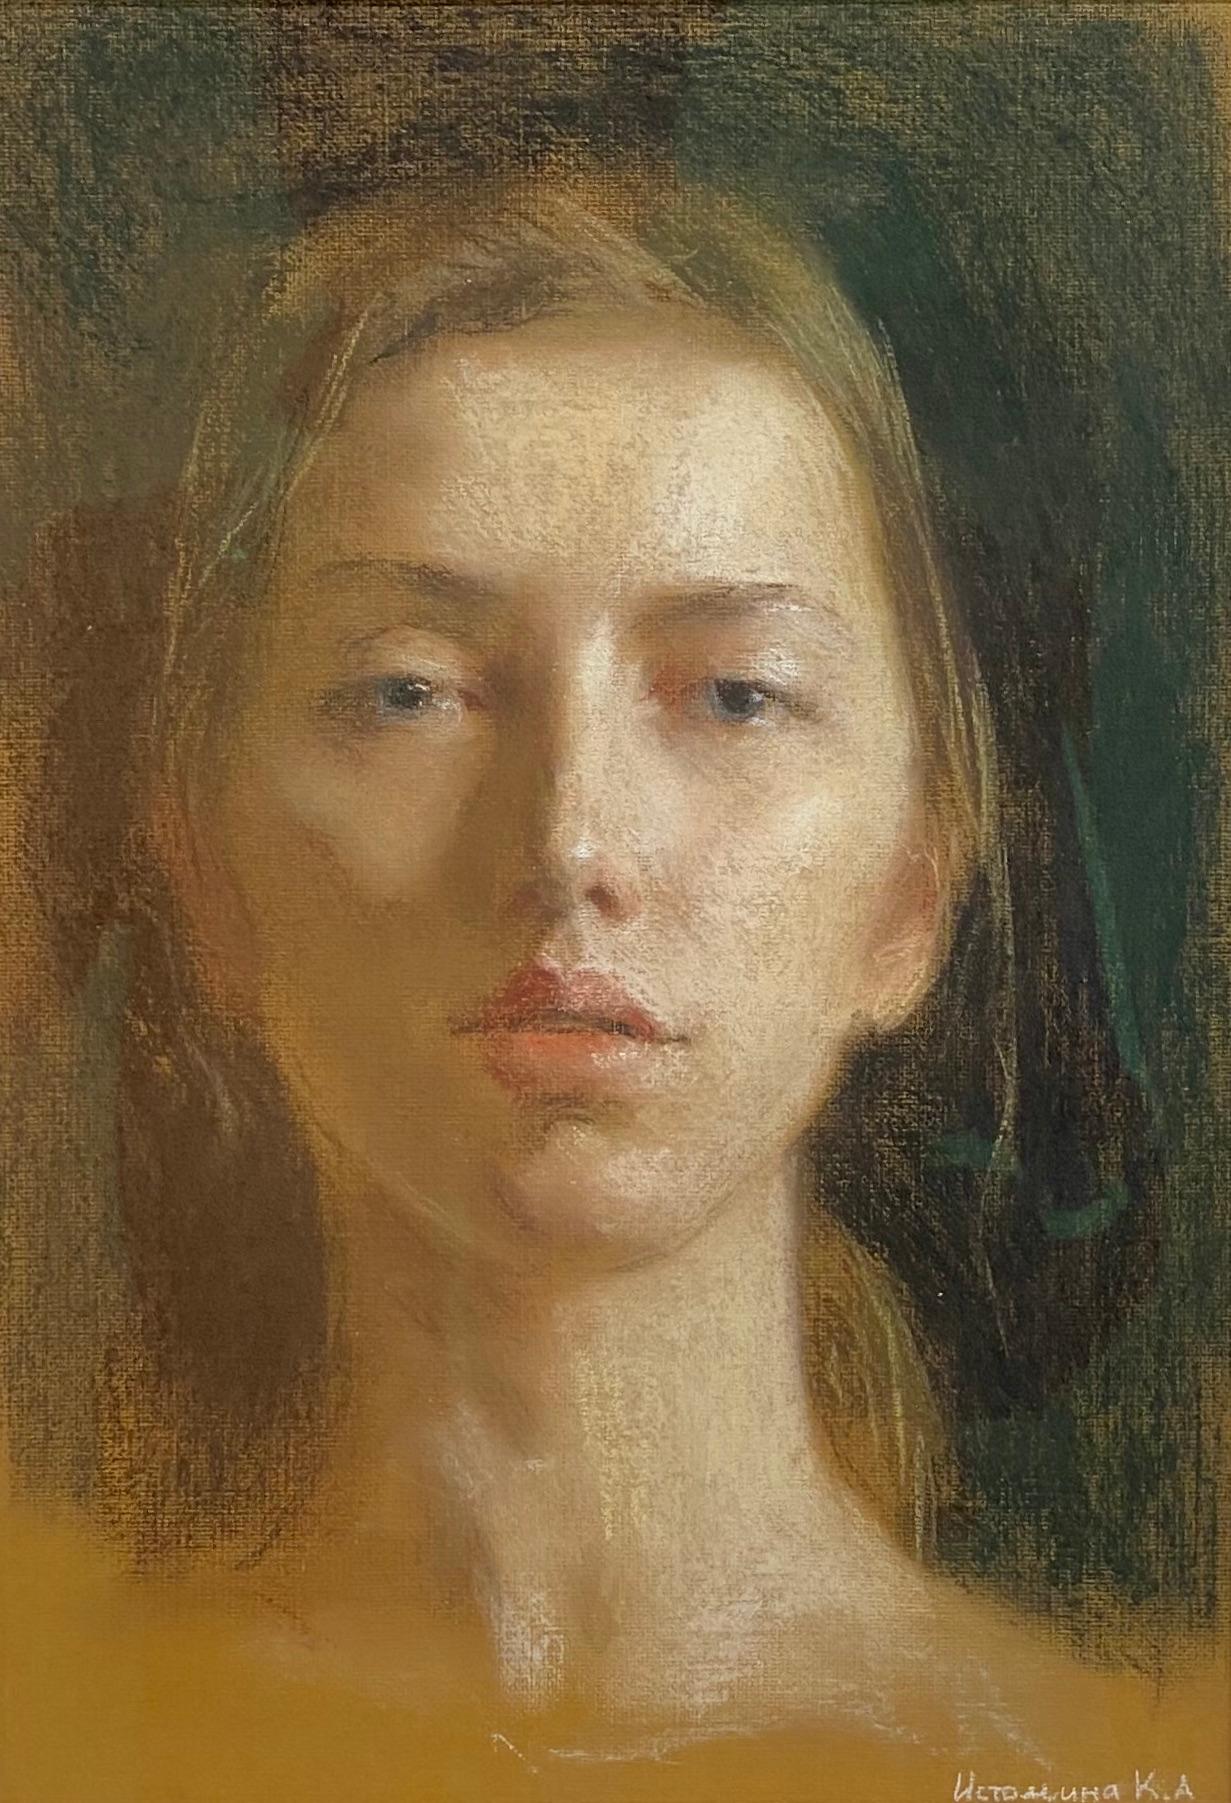 Self-Portrait In Pastels - Dessins contemporains russes du 21e siècle - Art de Ksenya Istomina